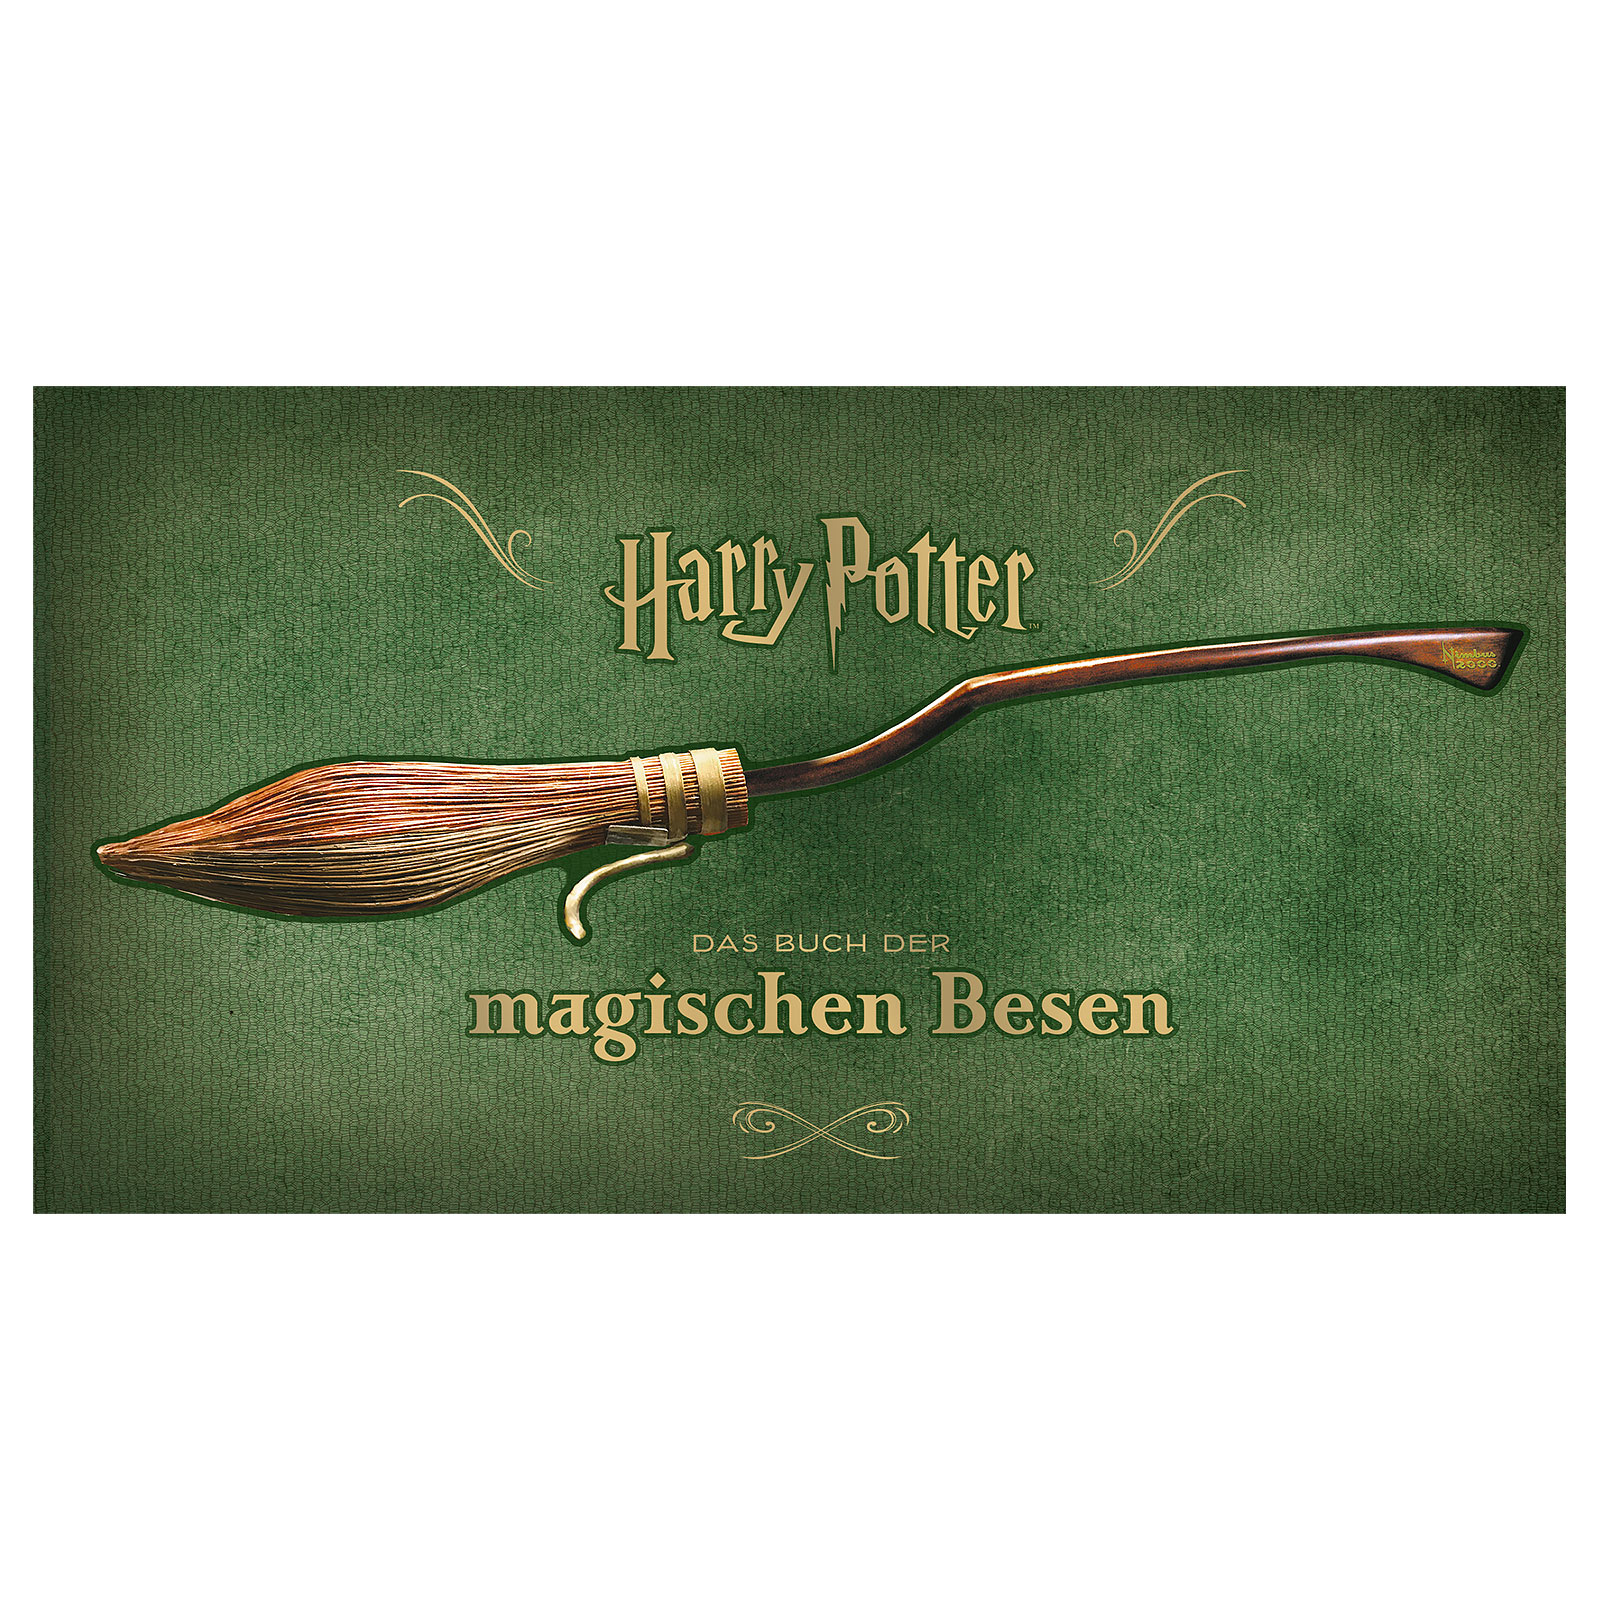 Harry Potter - Das Buch der magischen Besen